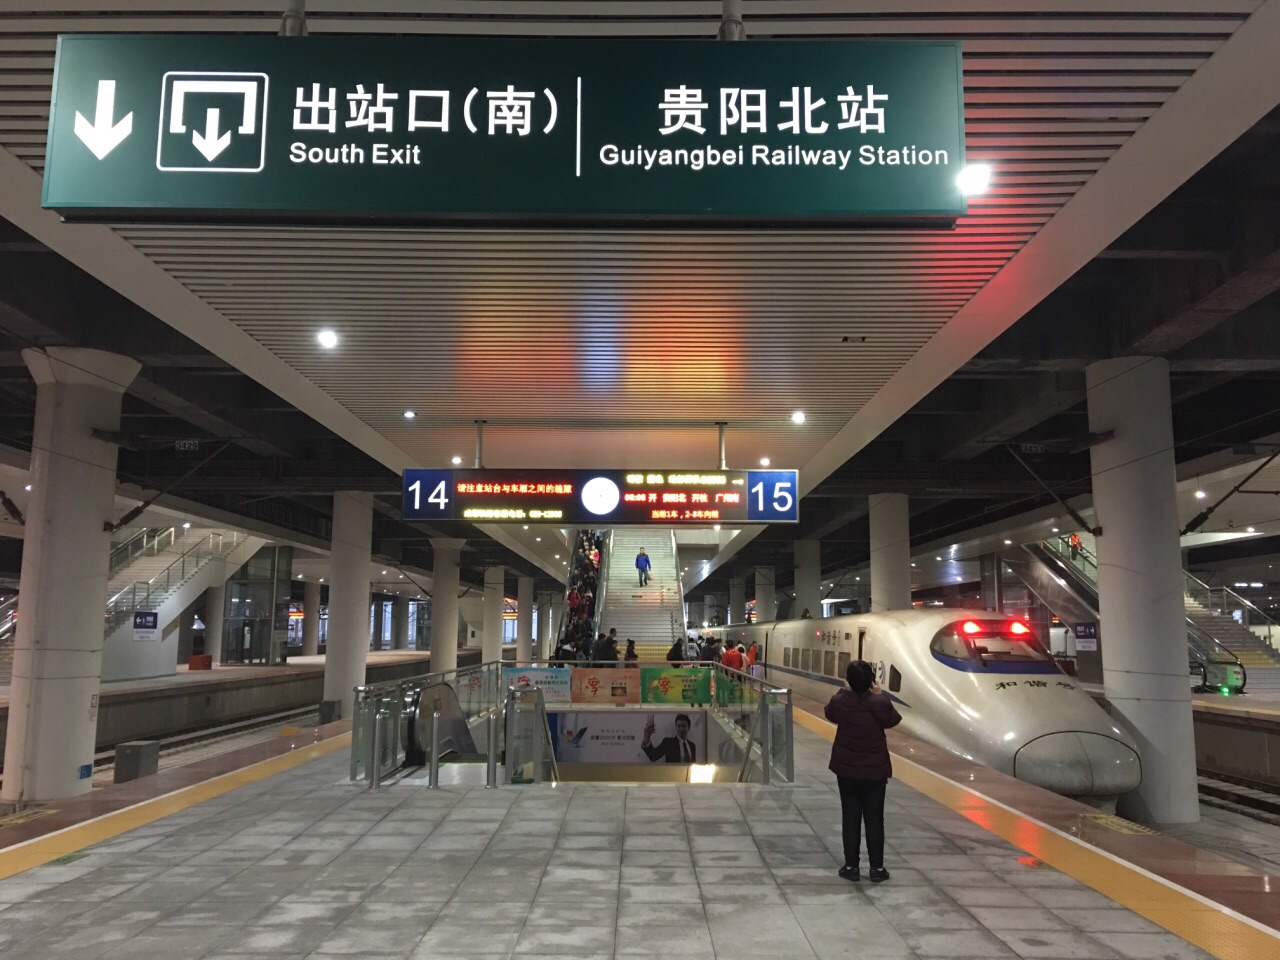 贵阳北站很大,气势宏伟,进站安检,入站台候车都很方便